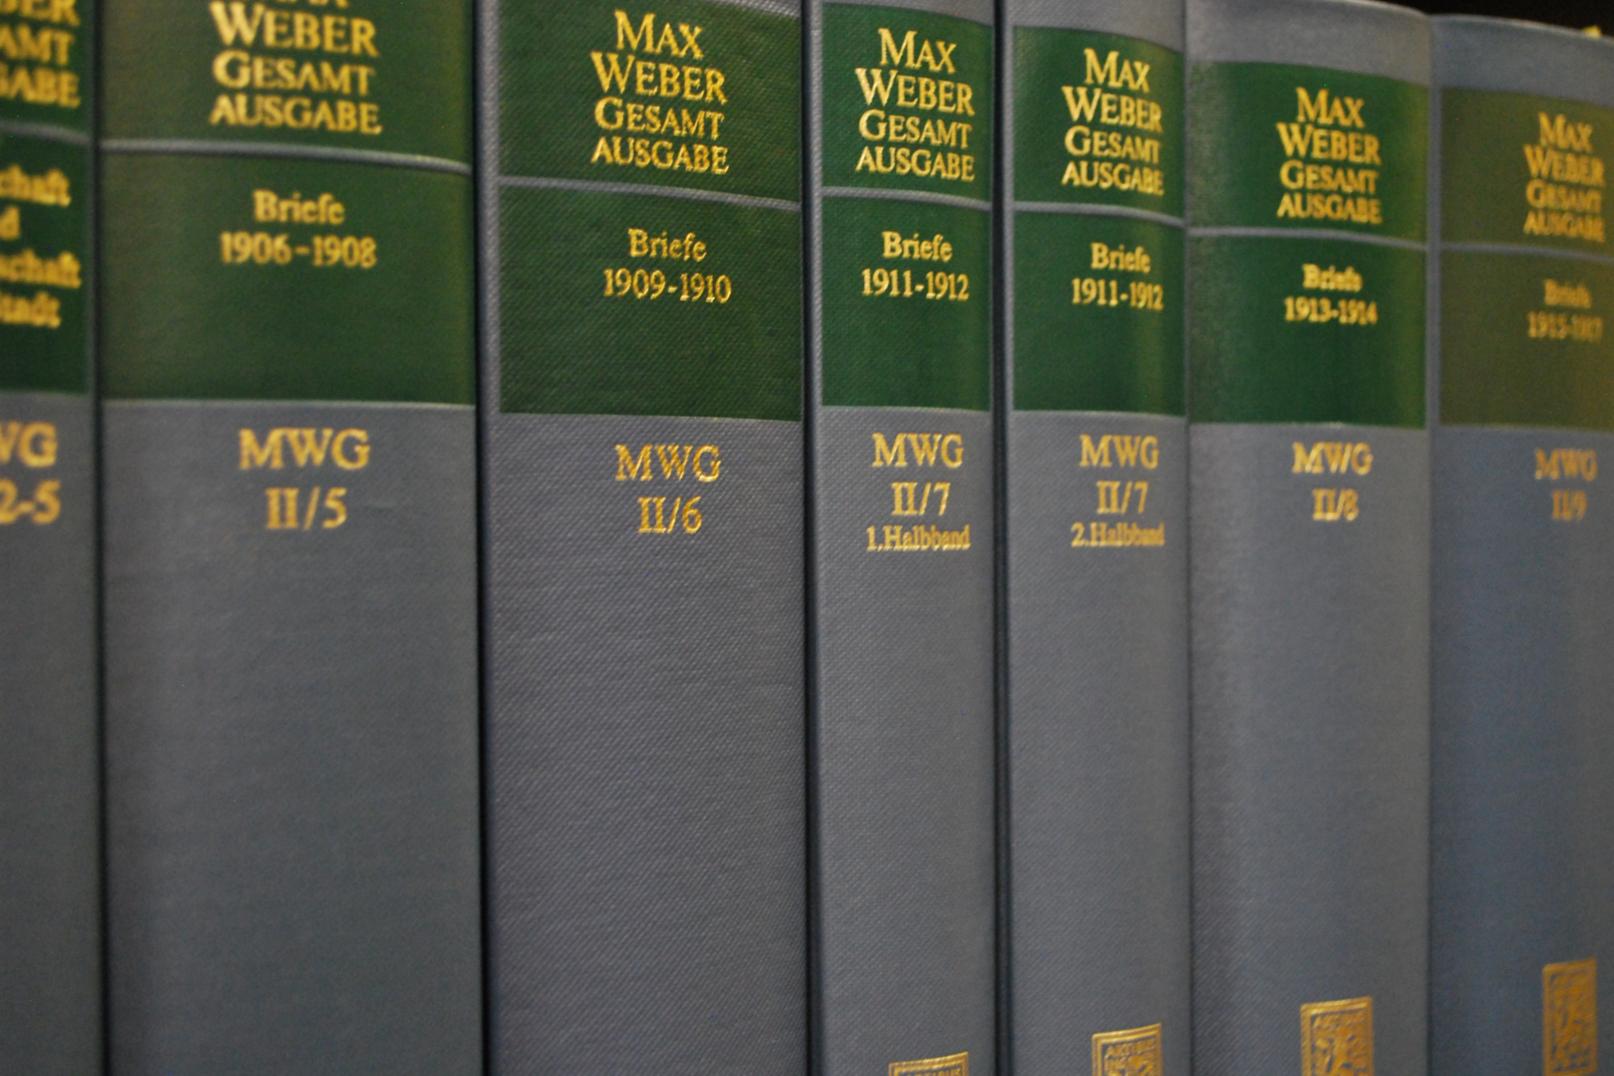 Max Weber Gesamtausgabe (c) Diözesanbibliothek Aachen